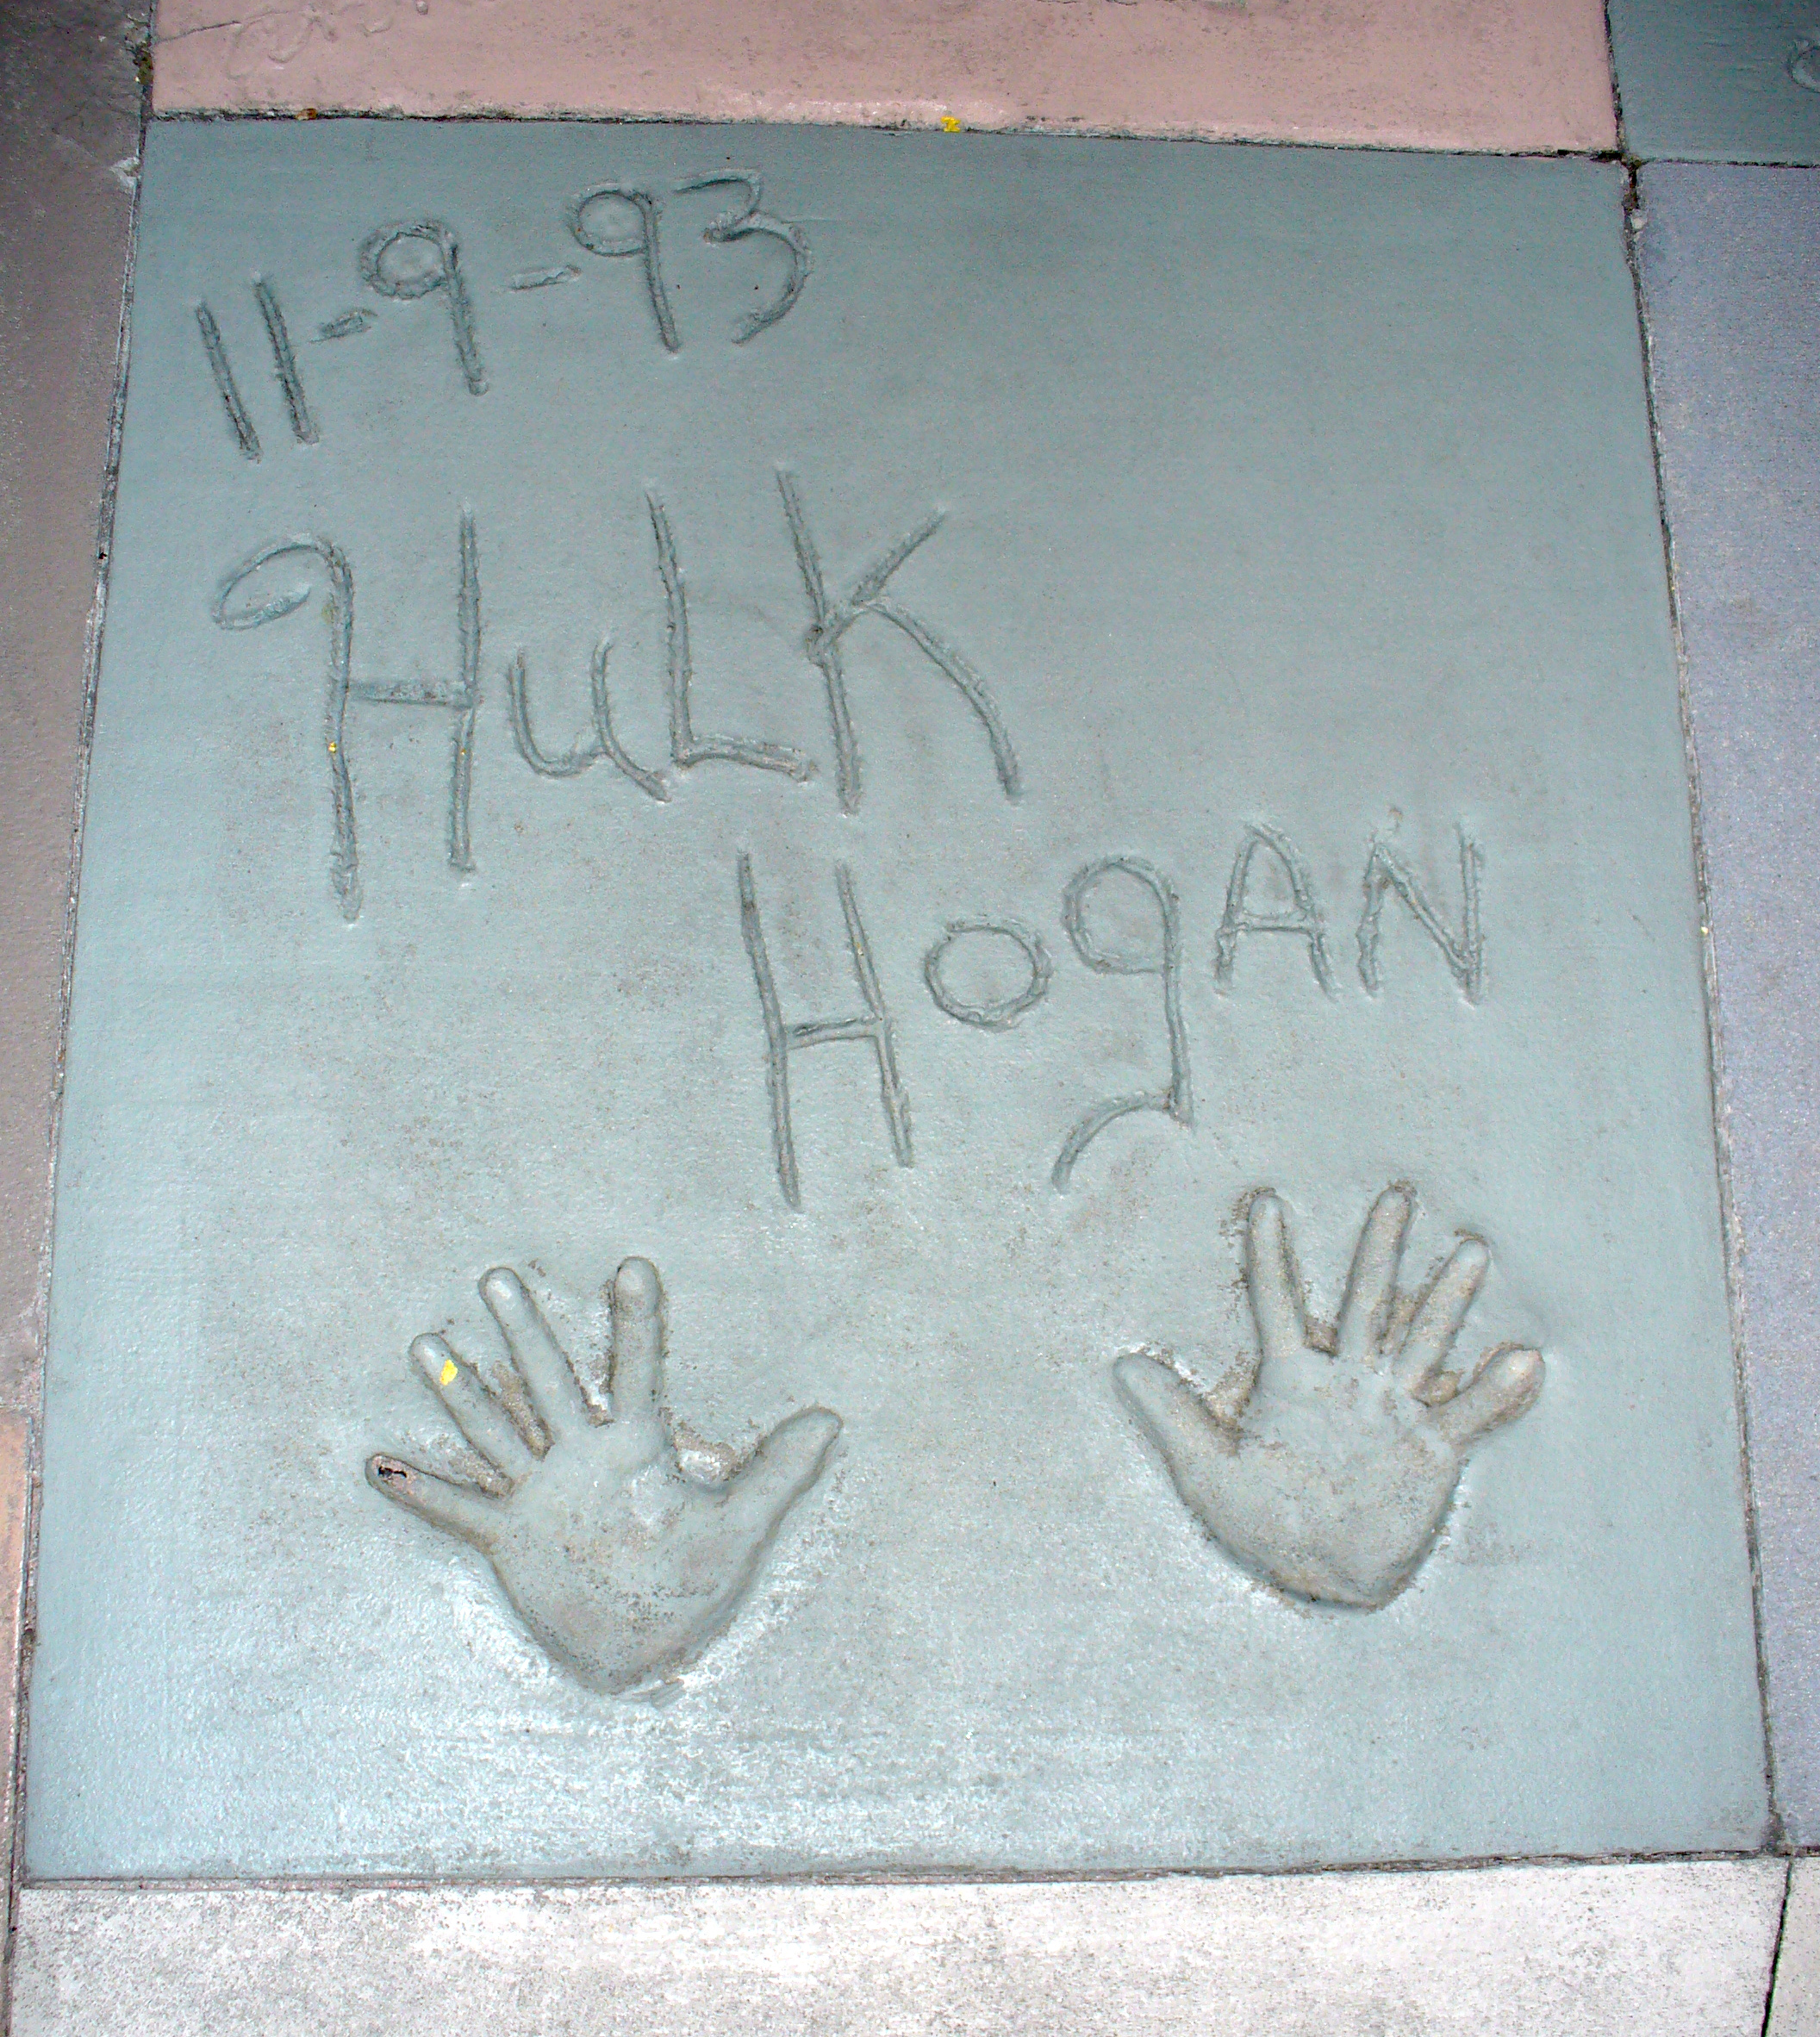 Hulk Hogan pic